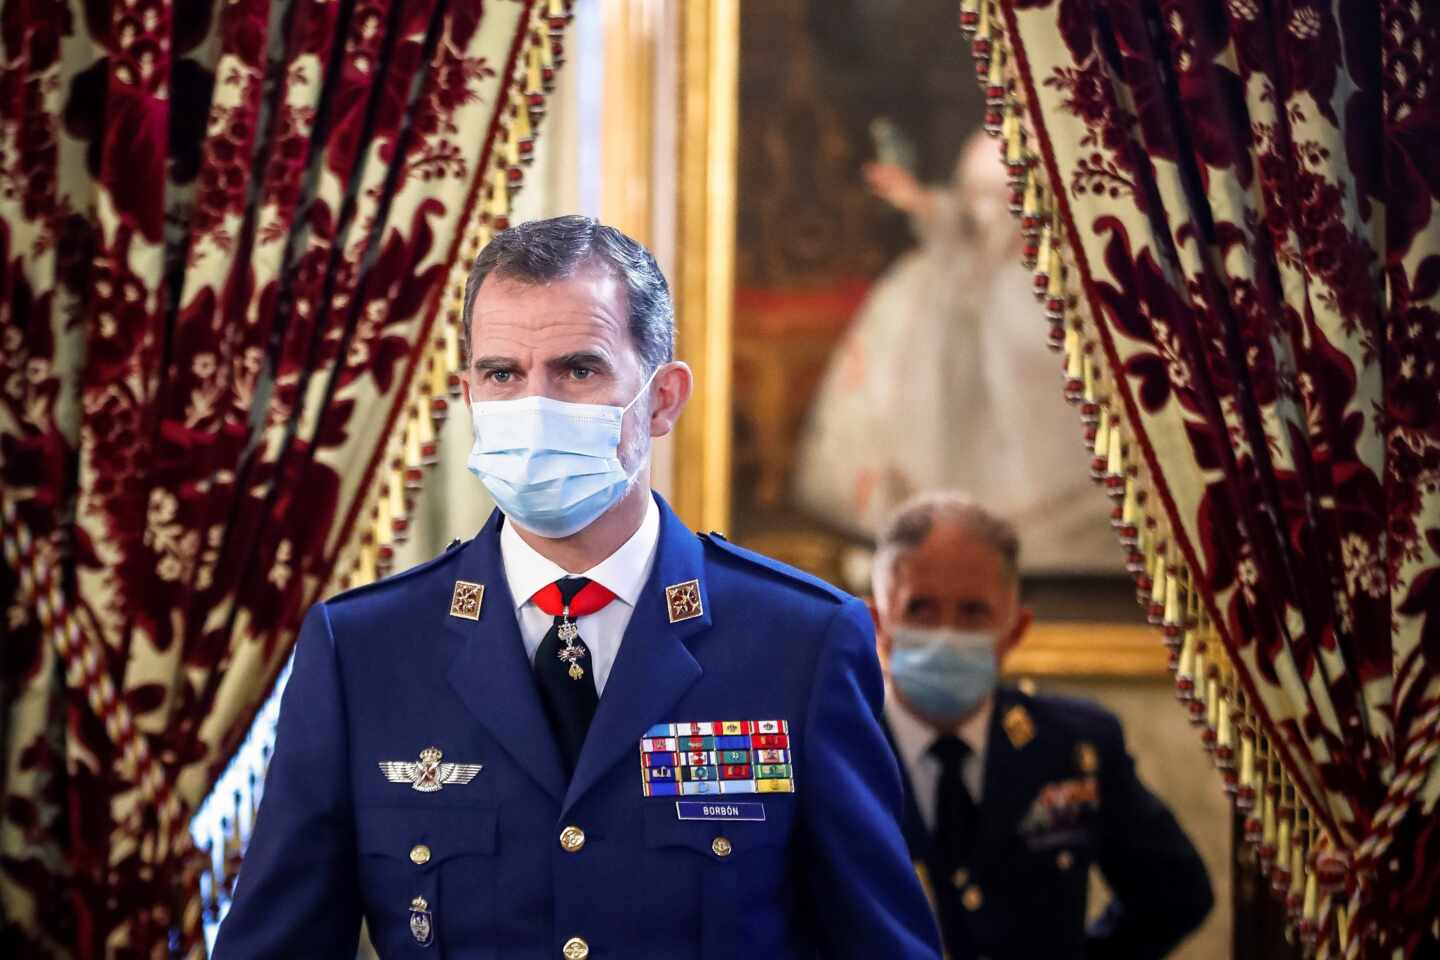 Felipe VI se vacunó este sábado contra el covid en Madrid